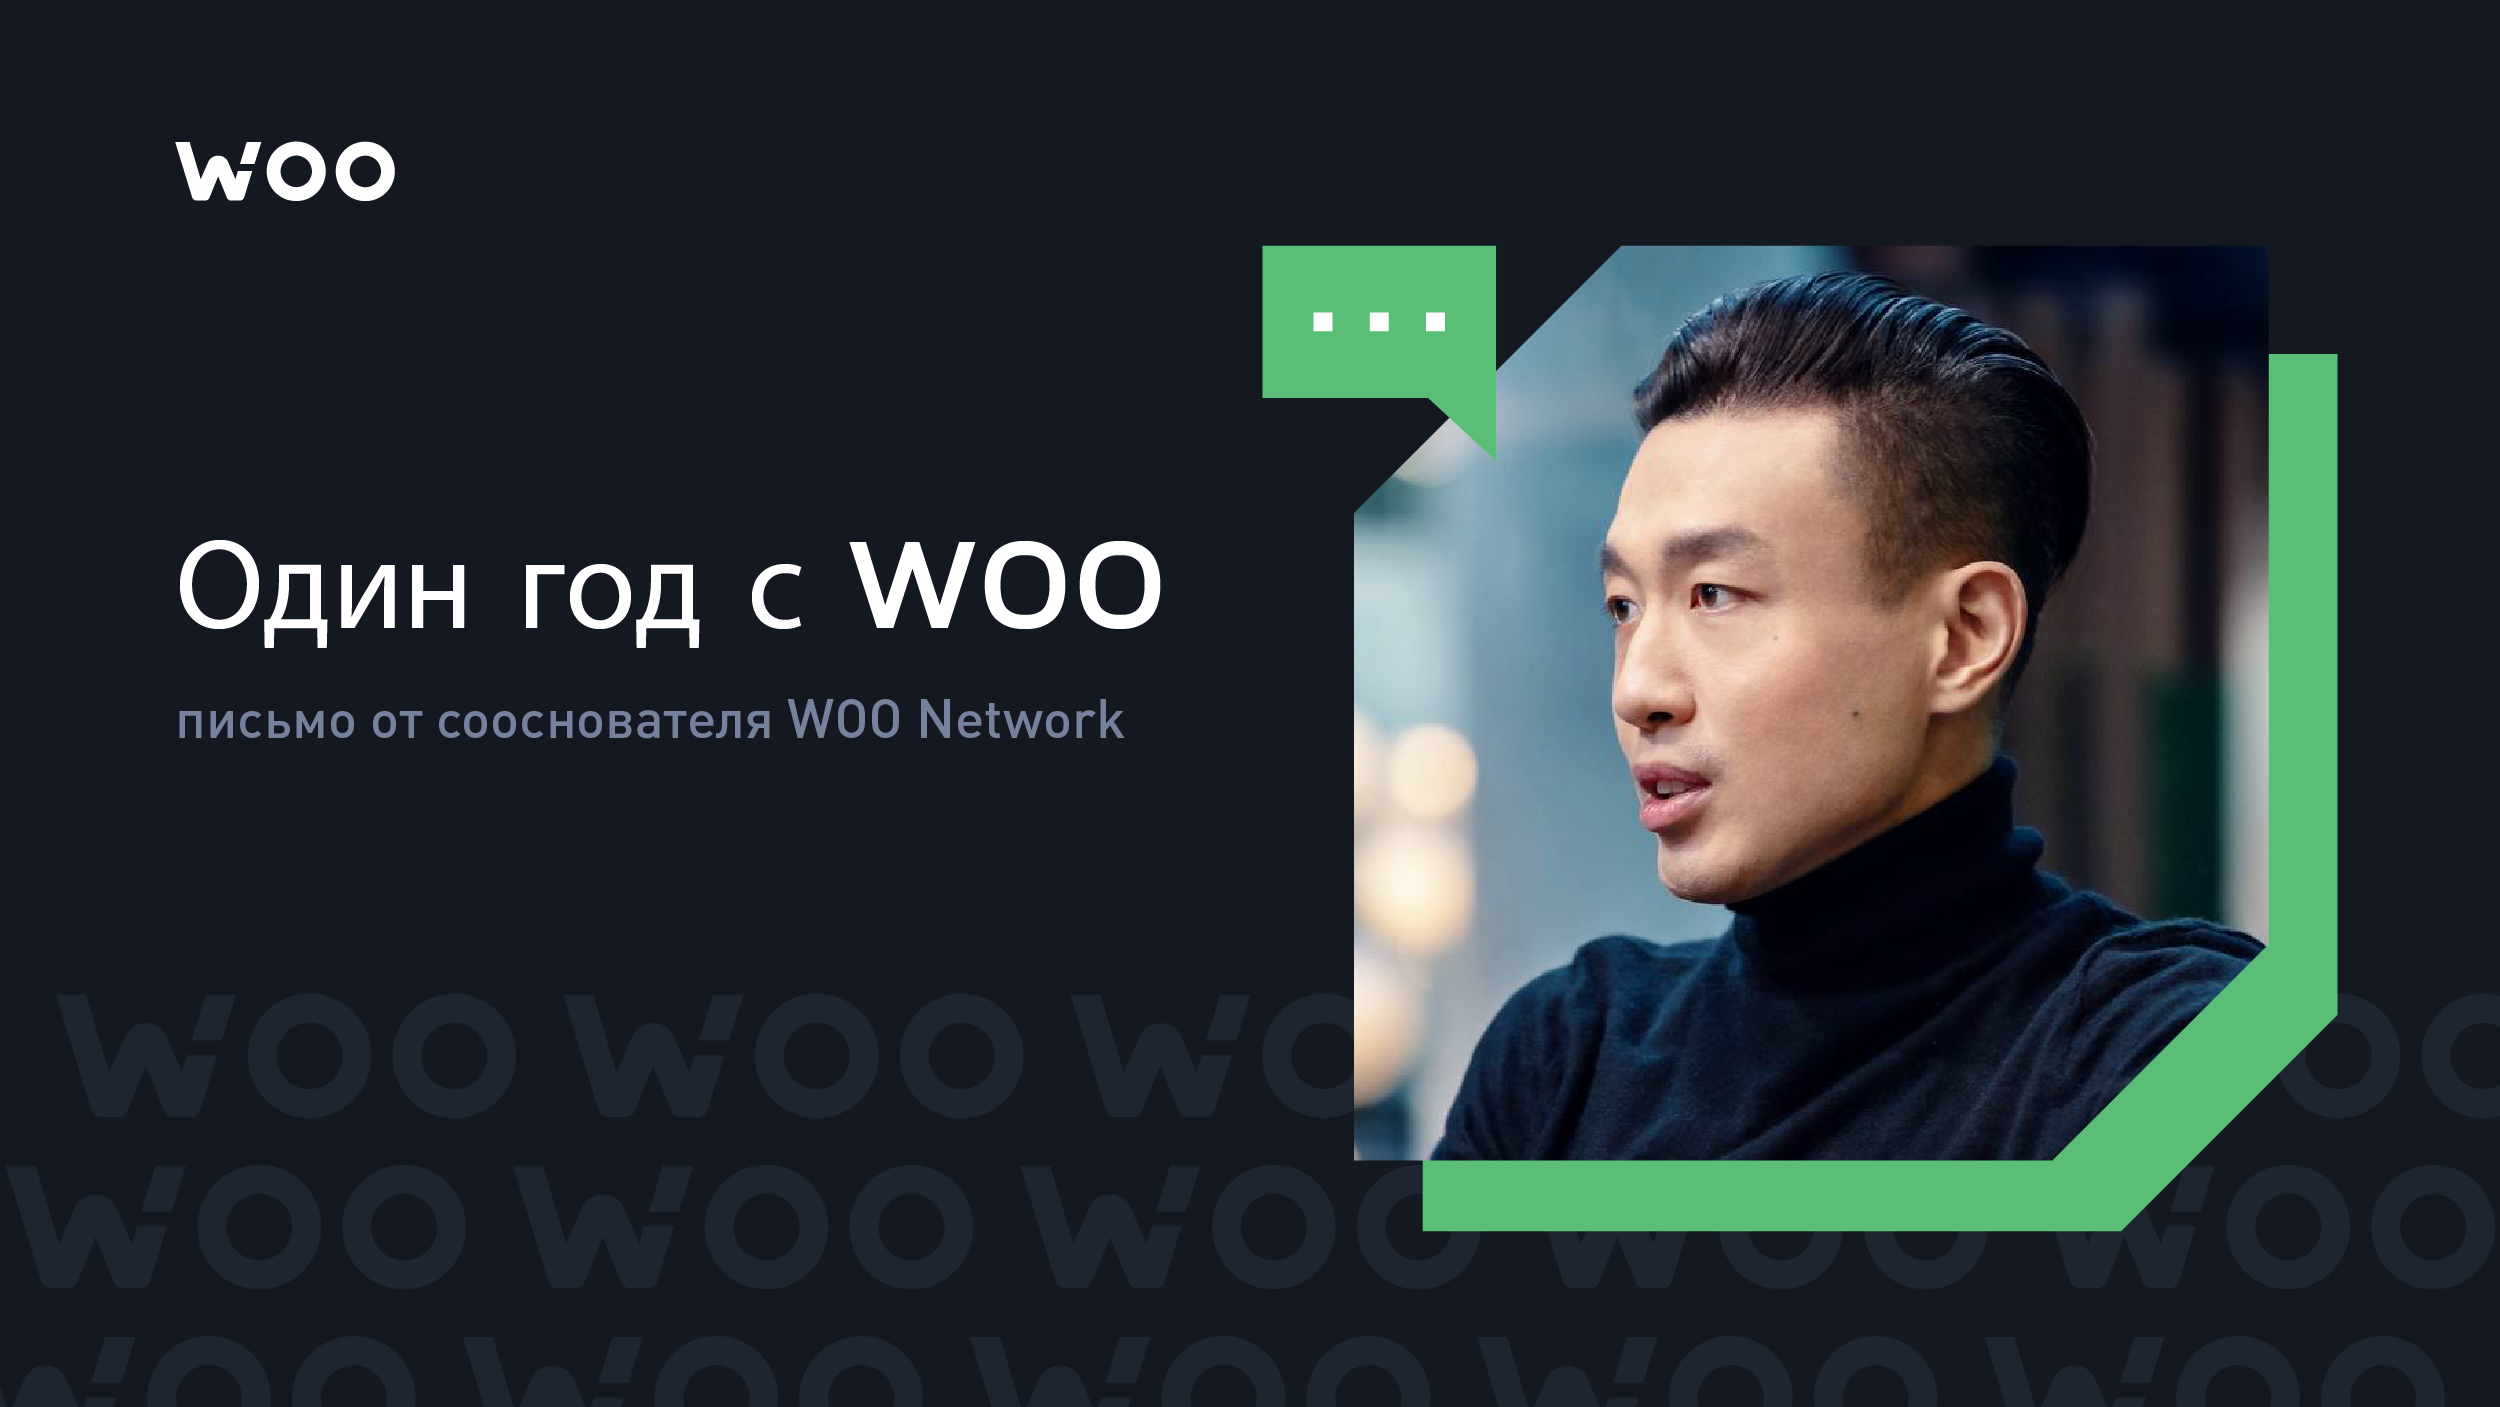 Один год с WOO: письмо от нашего сооснователя Джека Тана